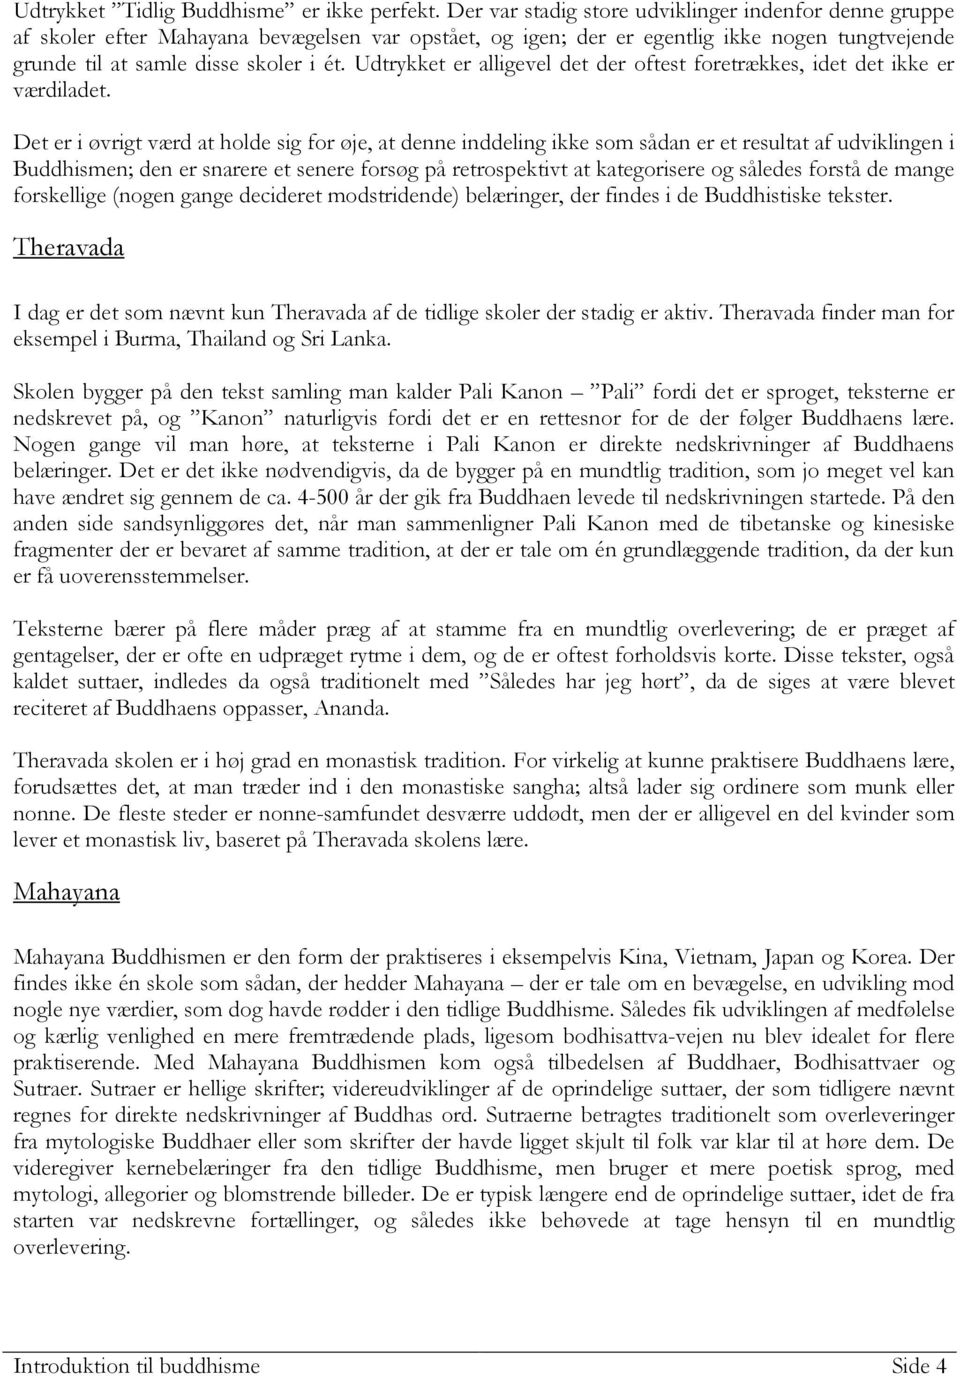 Introduktion til buddhisme - PDF Gratis download